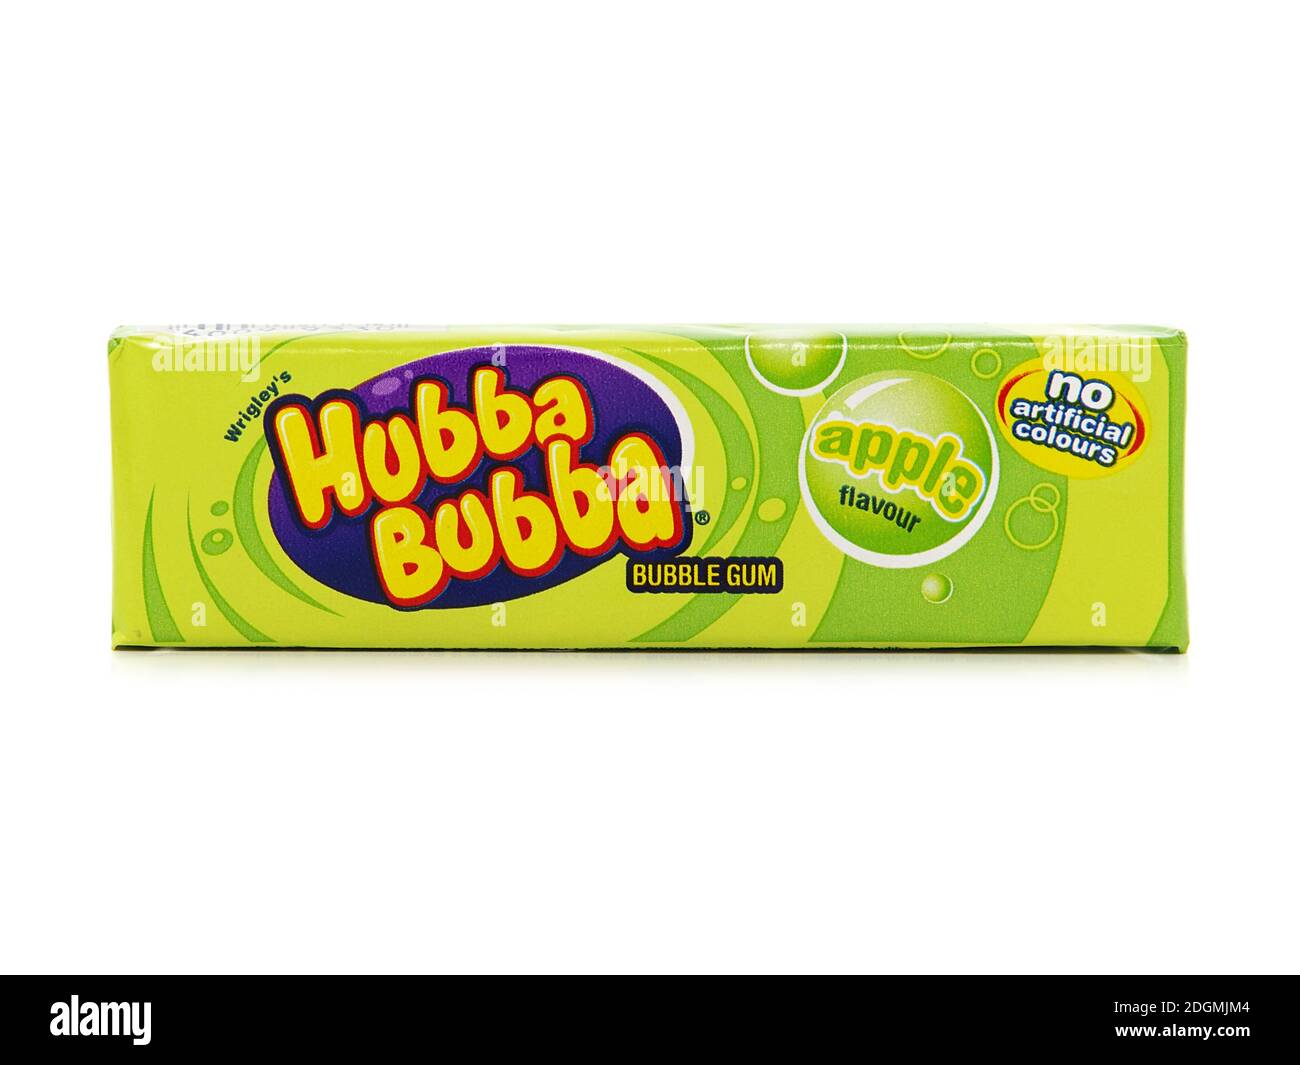 GALATI, ROMANIA - MAY 12, 2016. Hubba Bubba Bubble gum, apple